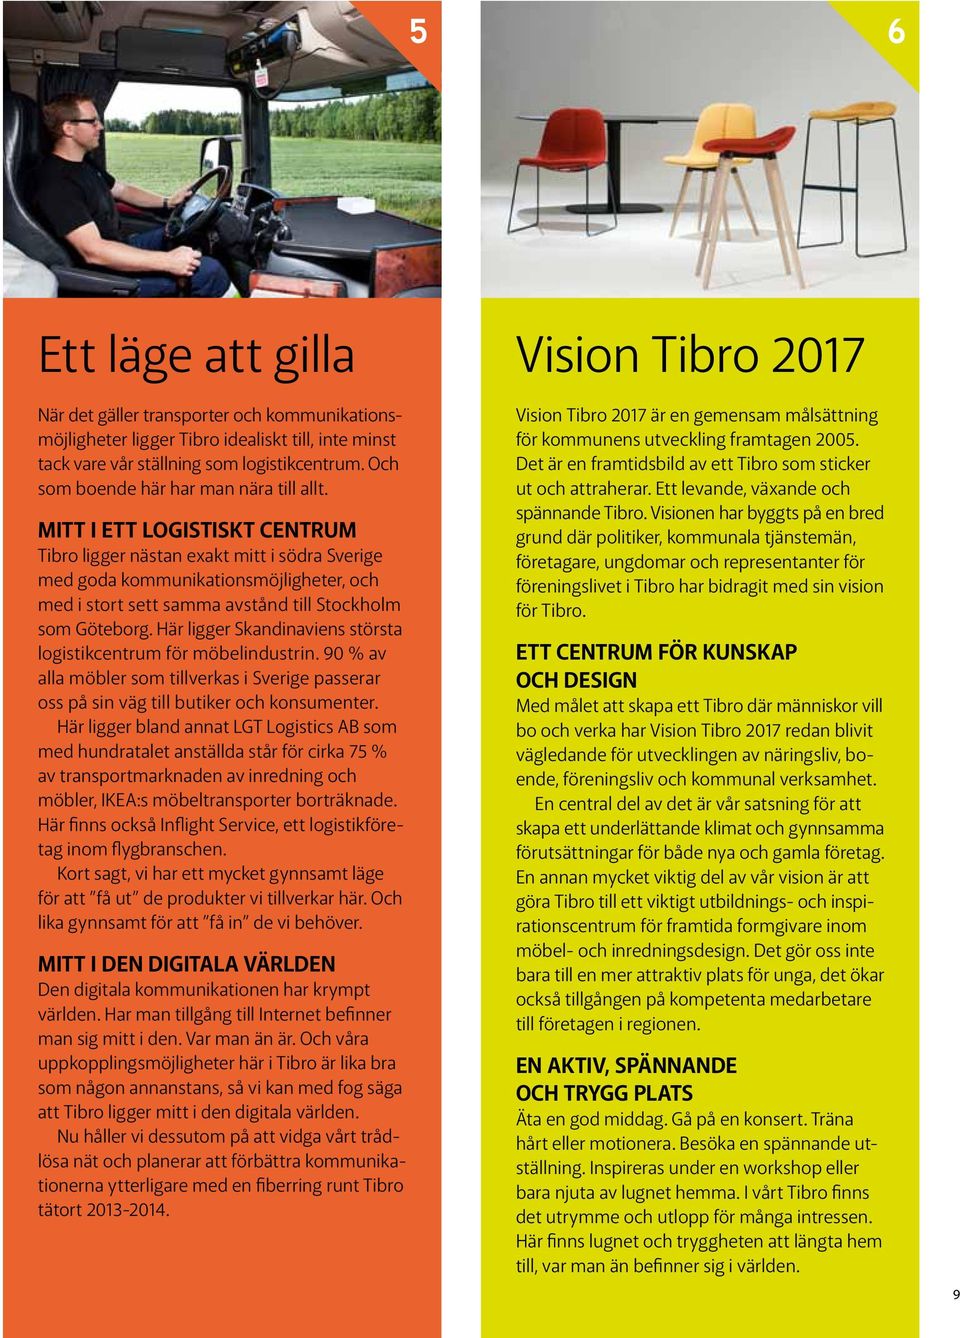 Mitt i ett logistiskt centrum Tibro ligger nästan exakt mitt i södra Sverige med goda kommunikationsmöjligheter, och med i stort sett samma avstånd till Stockholm som Göteborg.